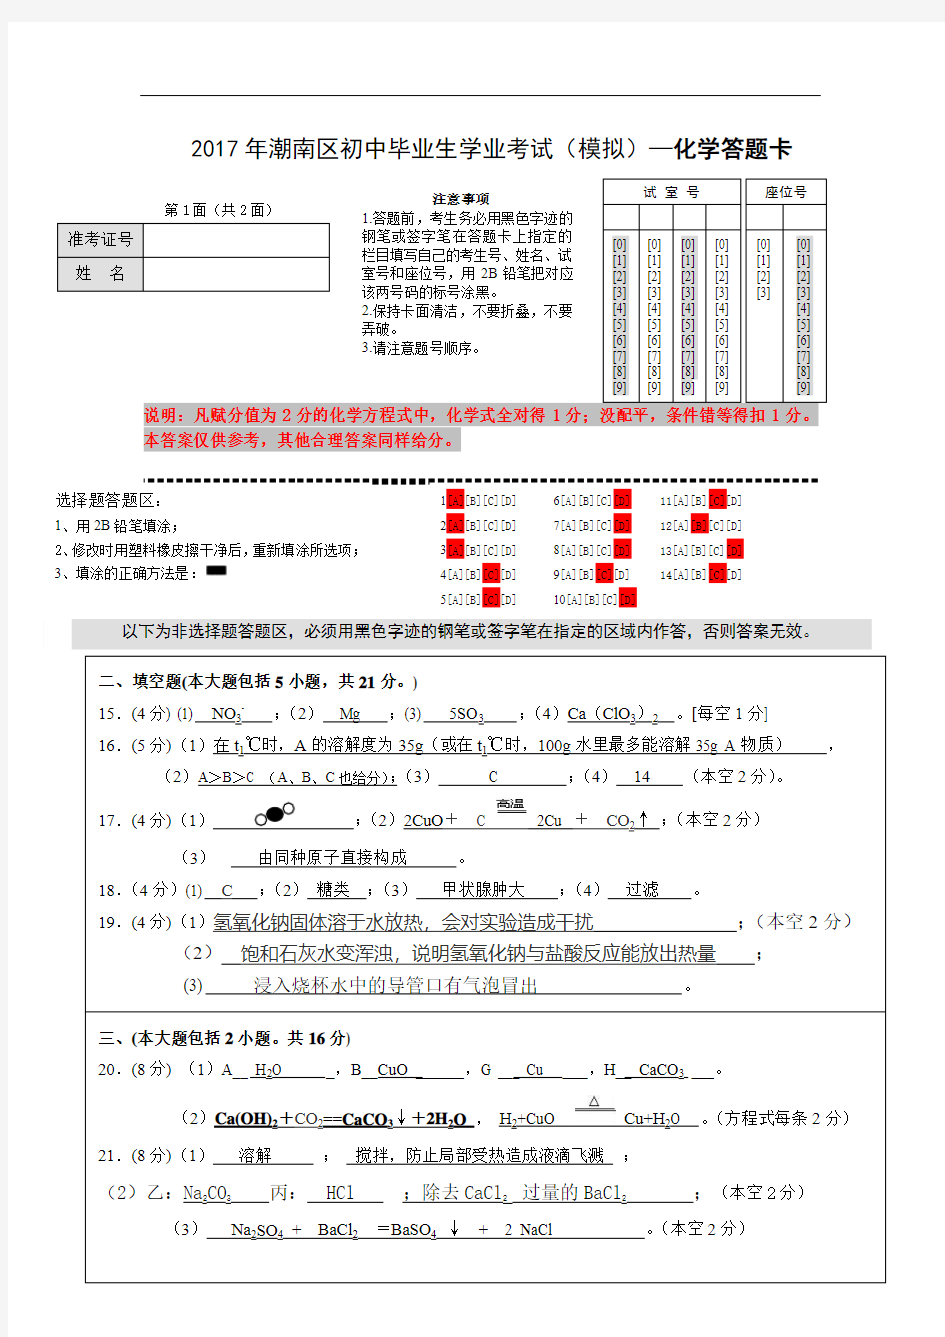 (参考答案答题卡版)2017年潮南区初中化学模拟考试